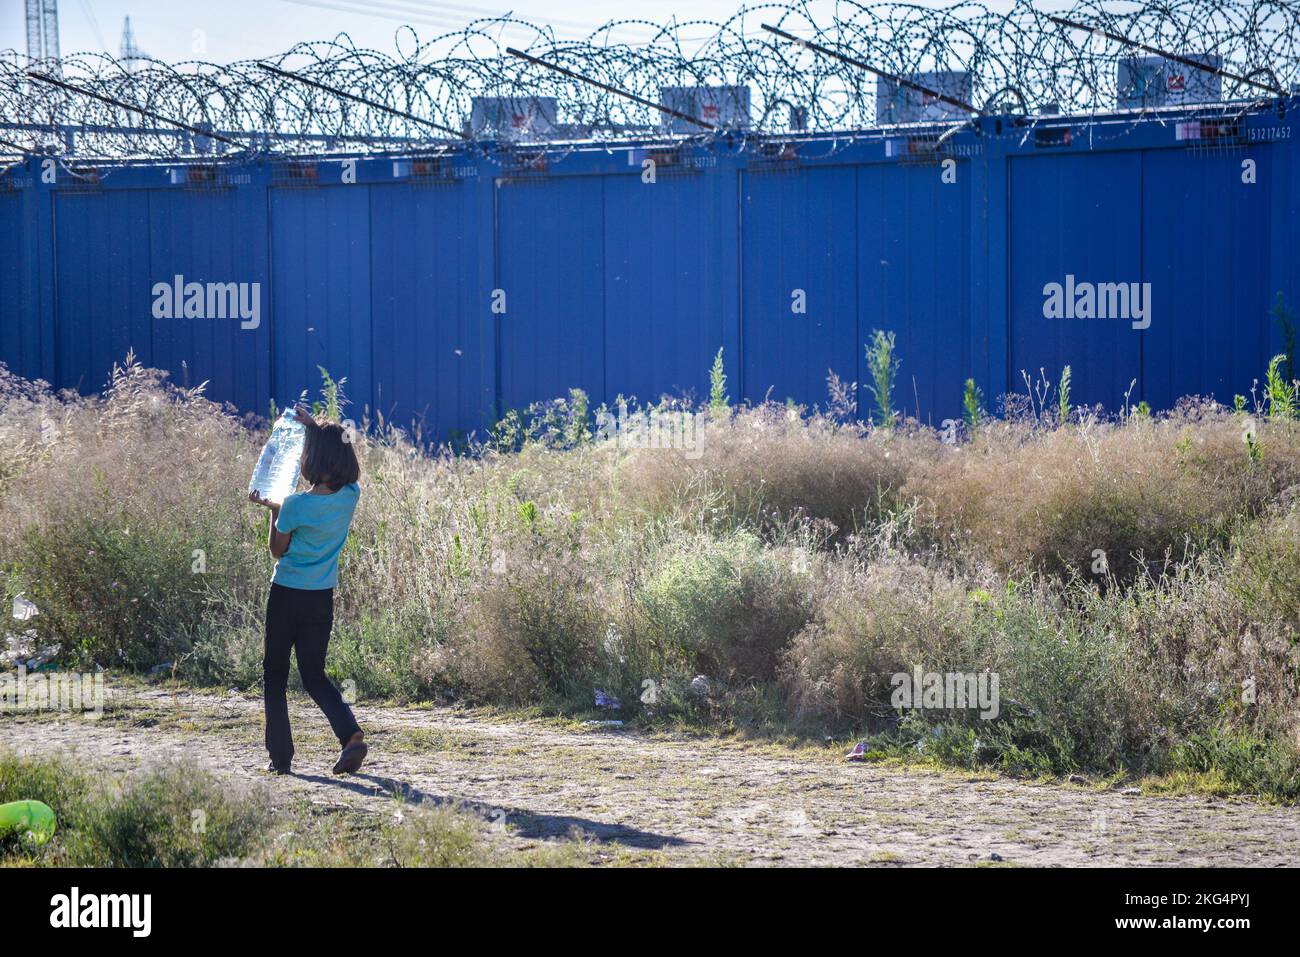 Ragazza giovane che porta acqua potabile. Condizioni di vita difficili nel campo improvvisato dei migranti/rifugiati di transito al confine serbo-ungherese. Foto Stock